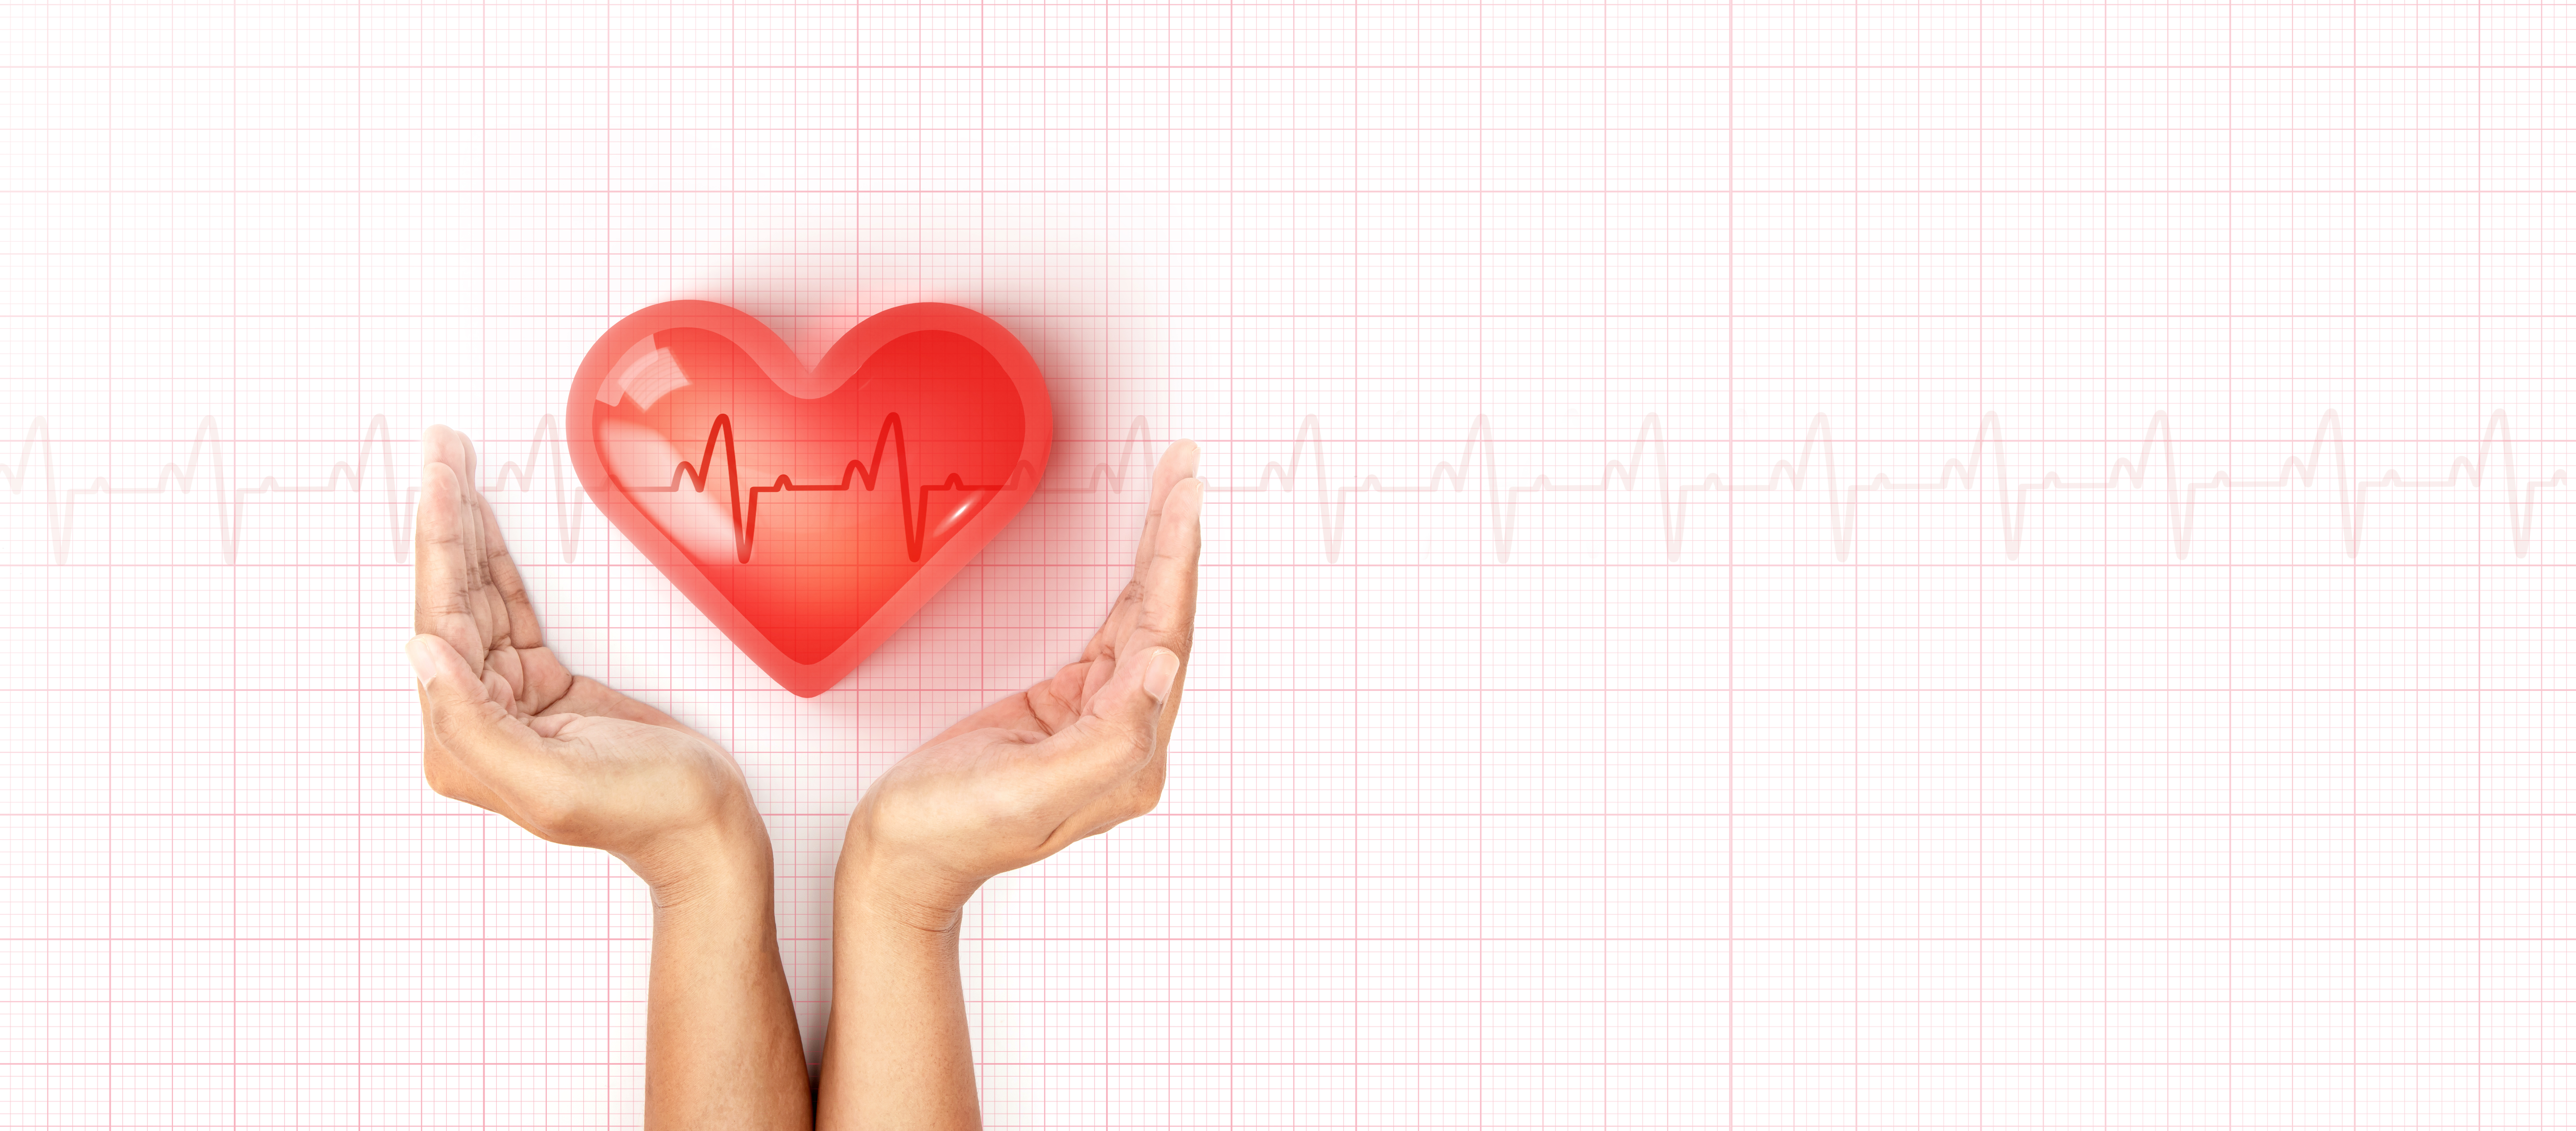 sănătatea cardiovasculară, SĂNĂTATEA CARDIOVASCULARĂ LA VENIREA SEZONULUI RECE, DVR Pharm